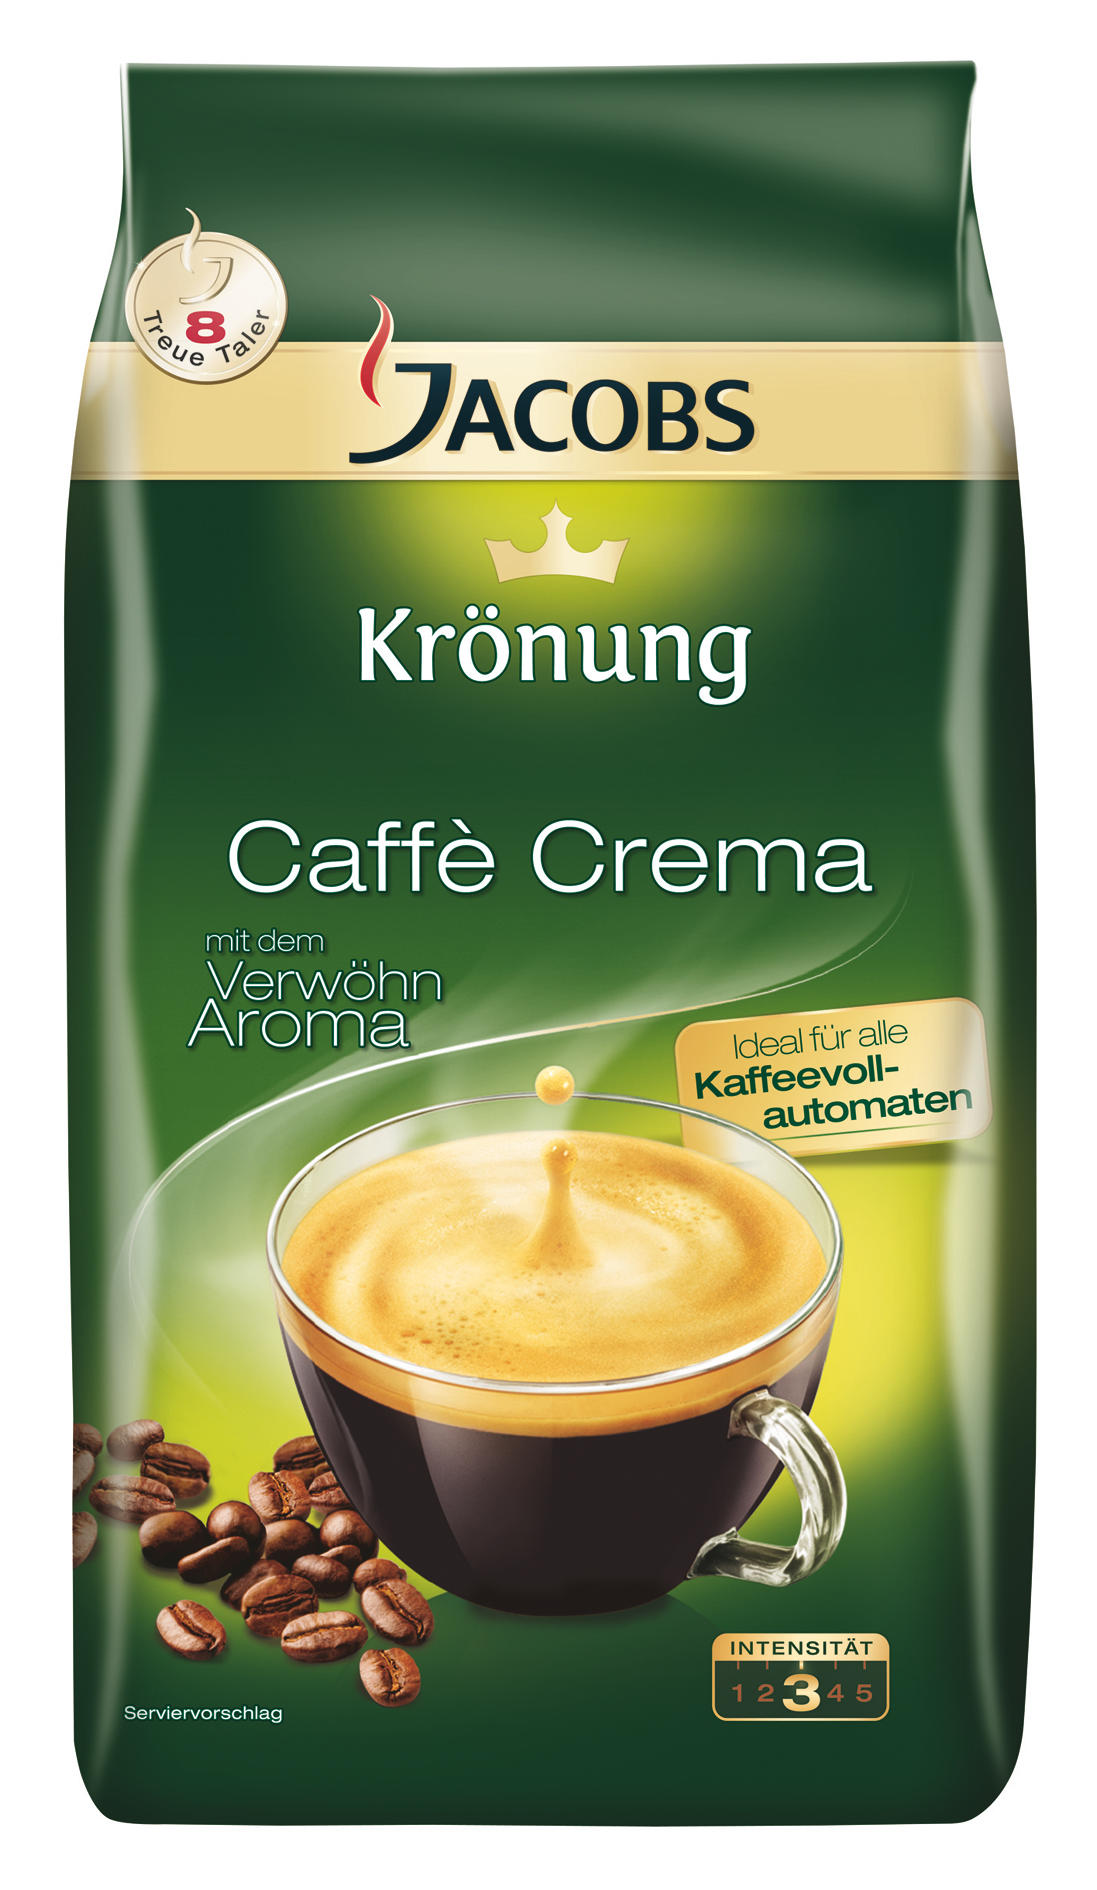 JACOBS Krönung Caffe Kaffeebohnen klassisch Crema